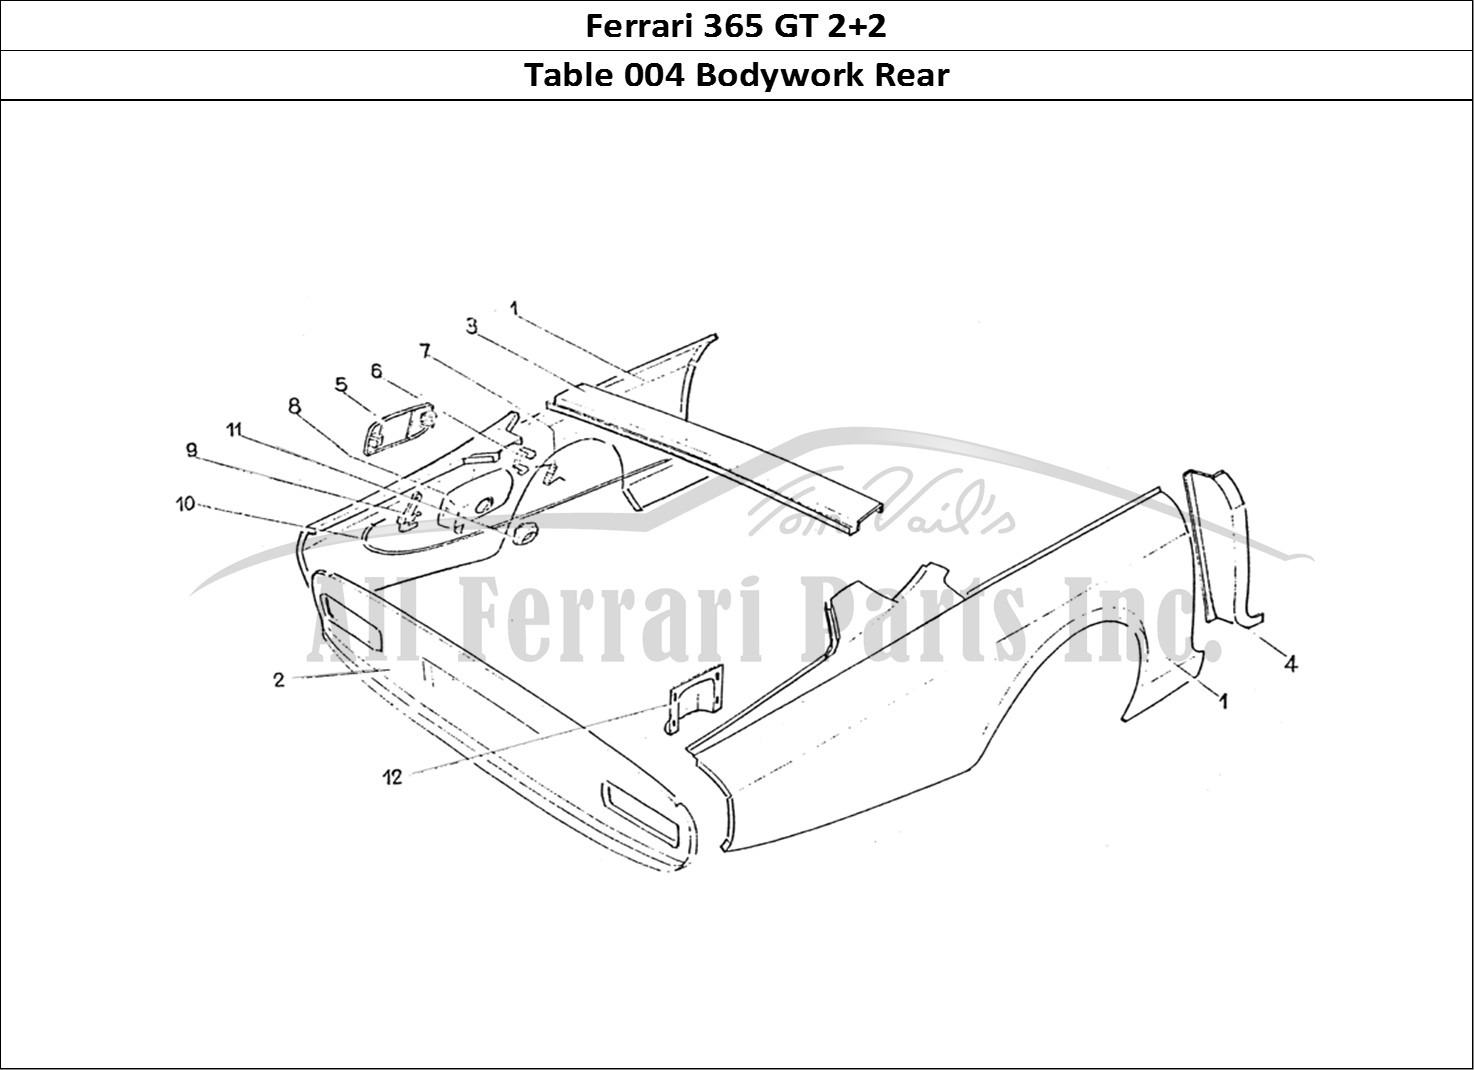 Ferrari Parts Ferrari 365 GT 2+2 (Coachwork) Page 004 Rear body work